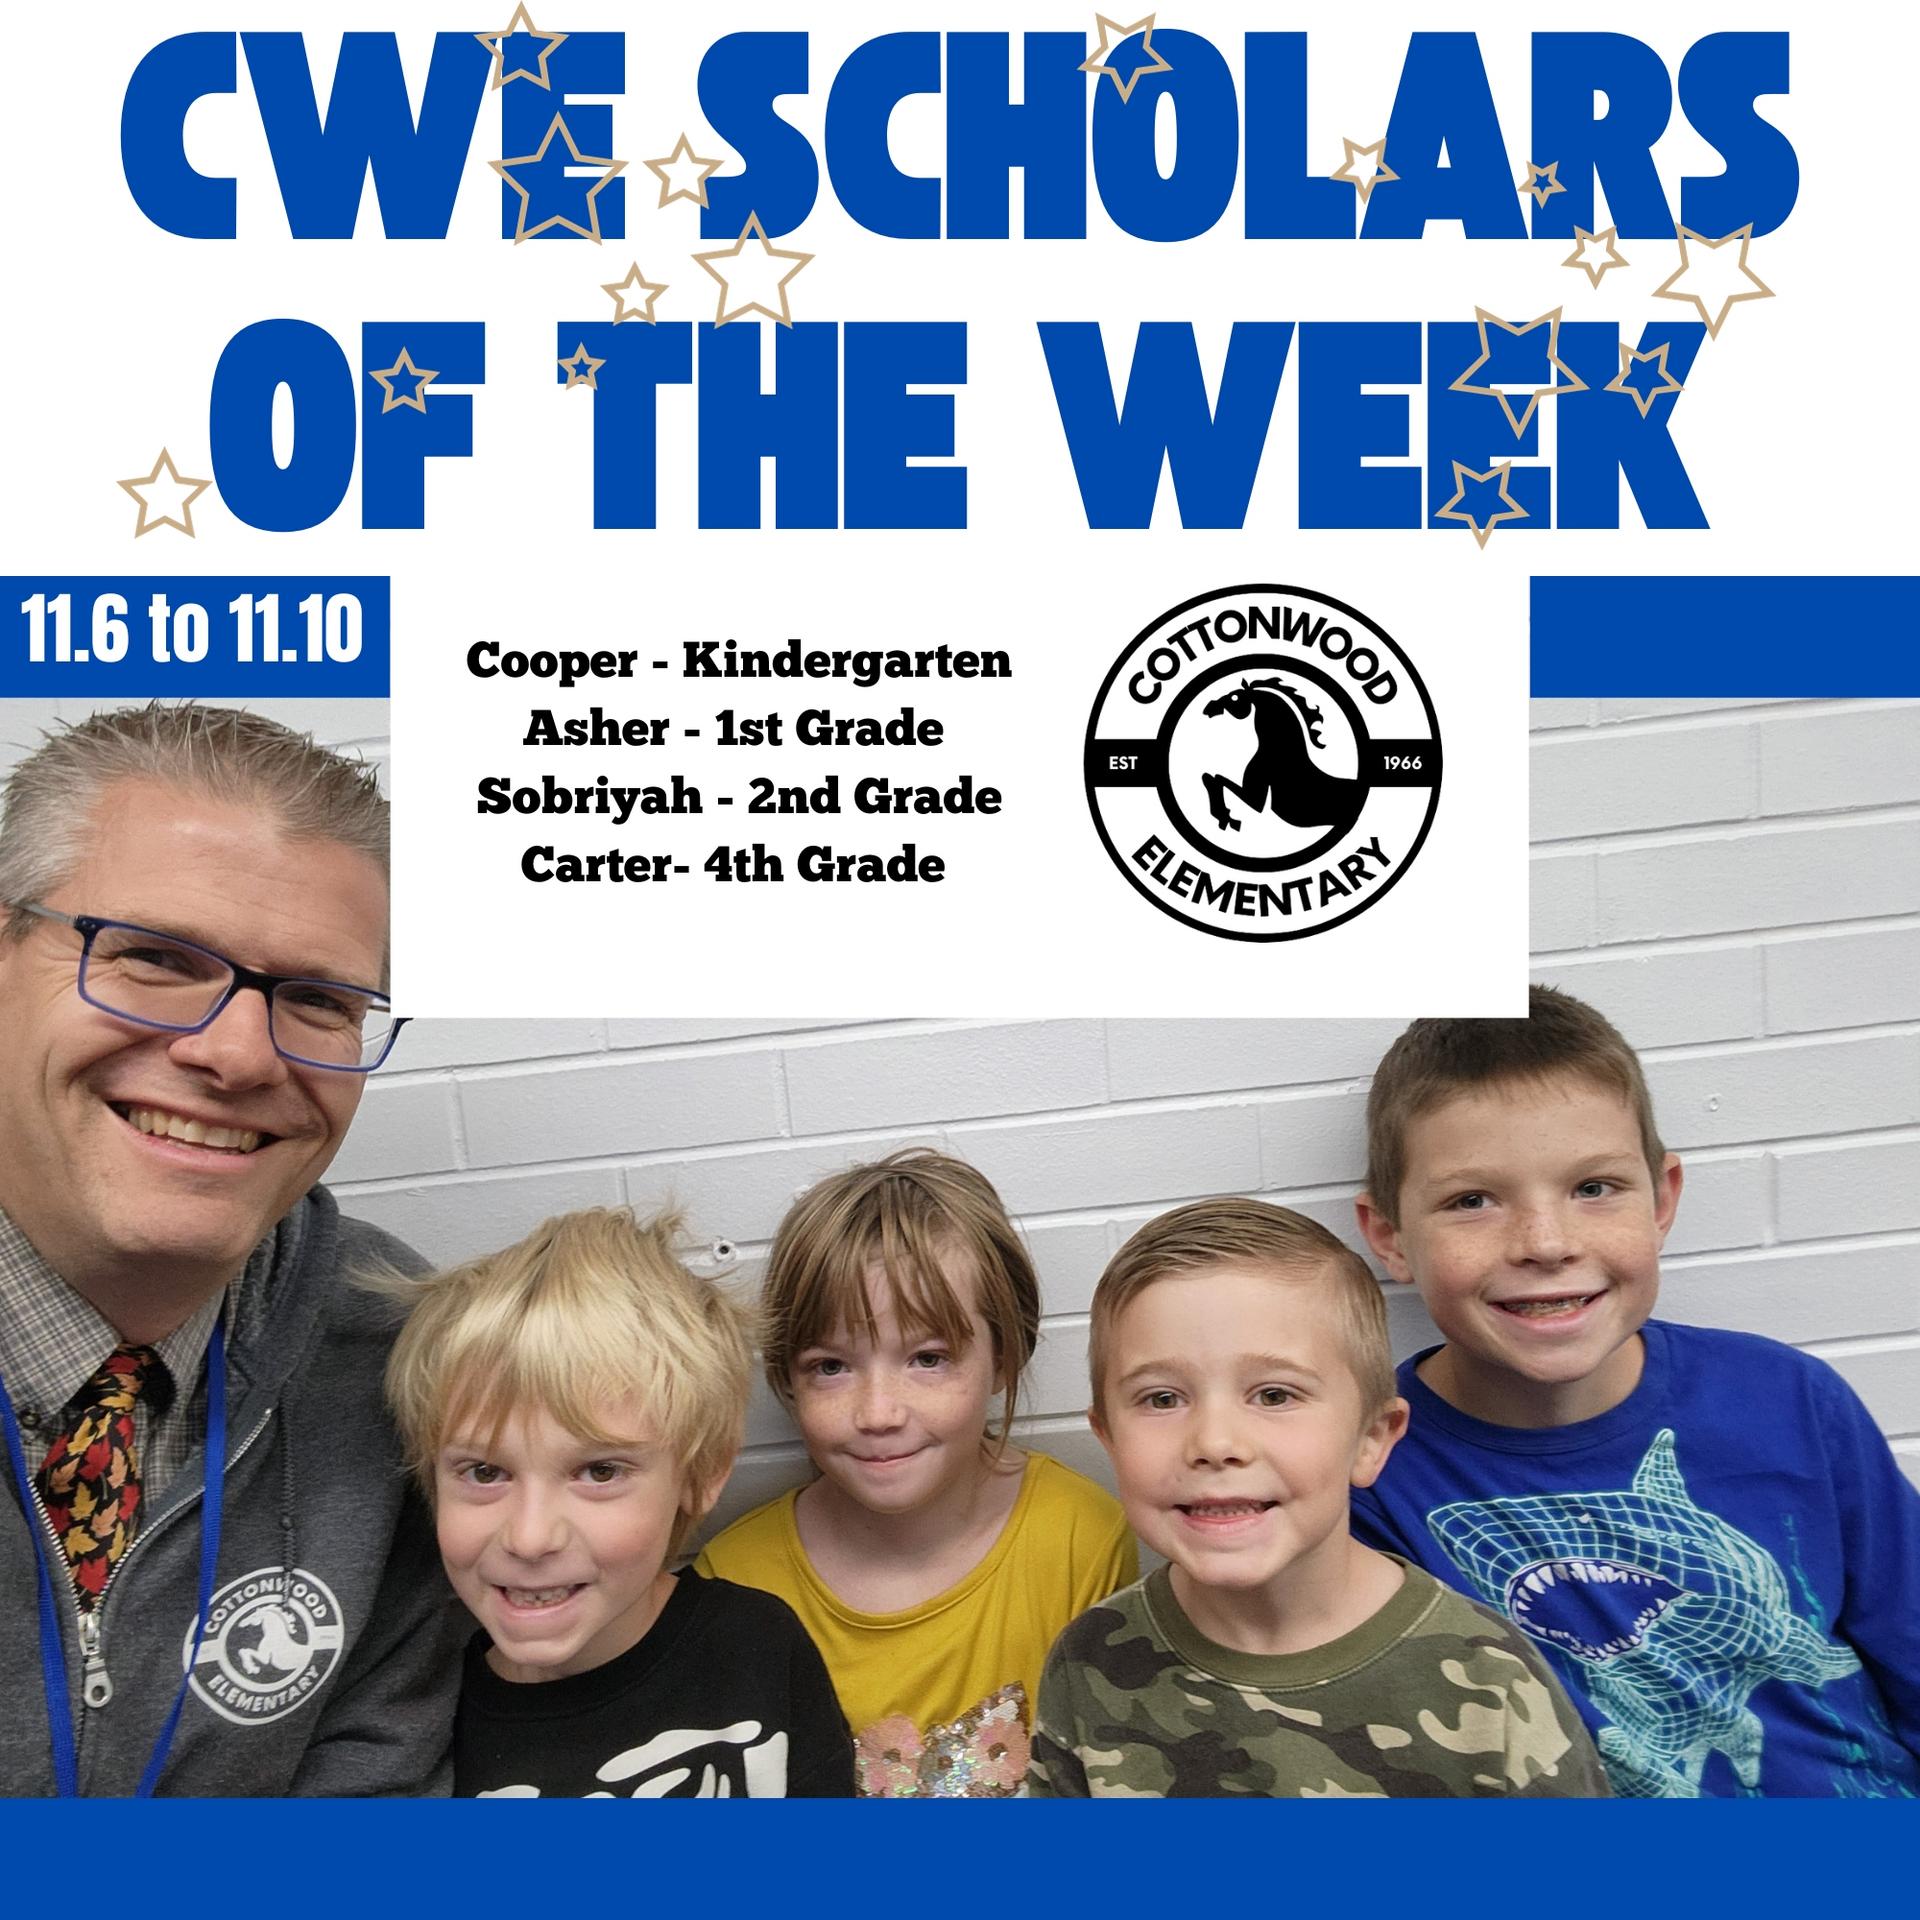 CWE-Scholars-of-the-Week-11.6-to-11.10.jpg